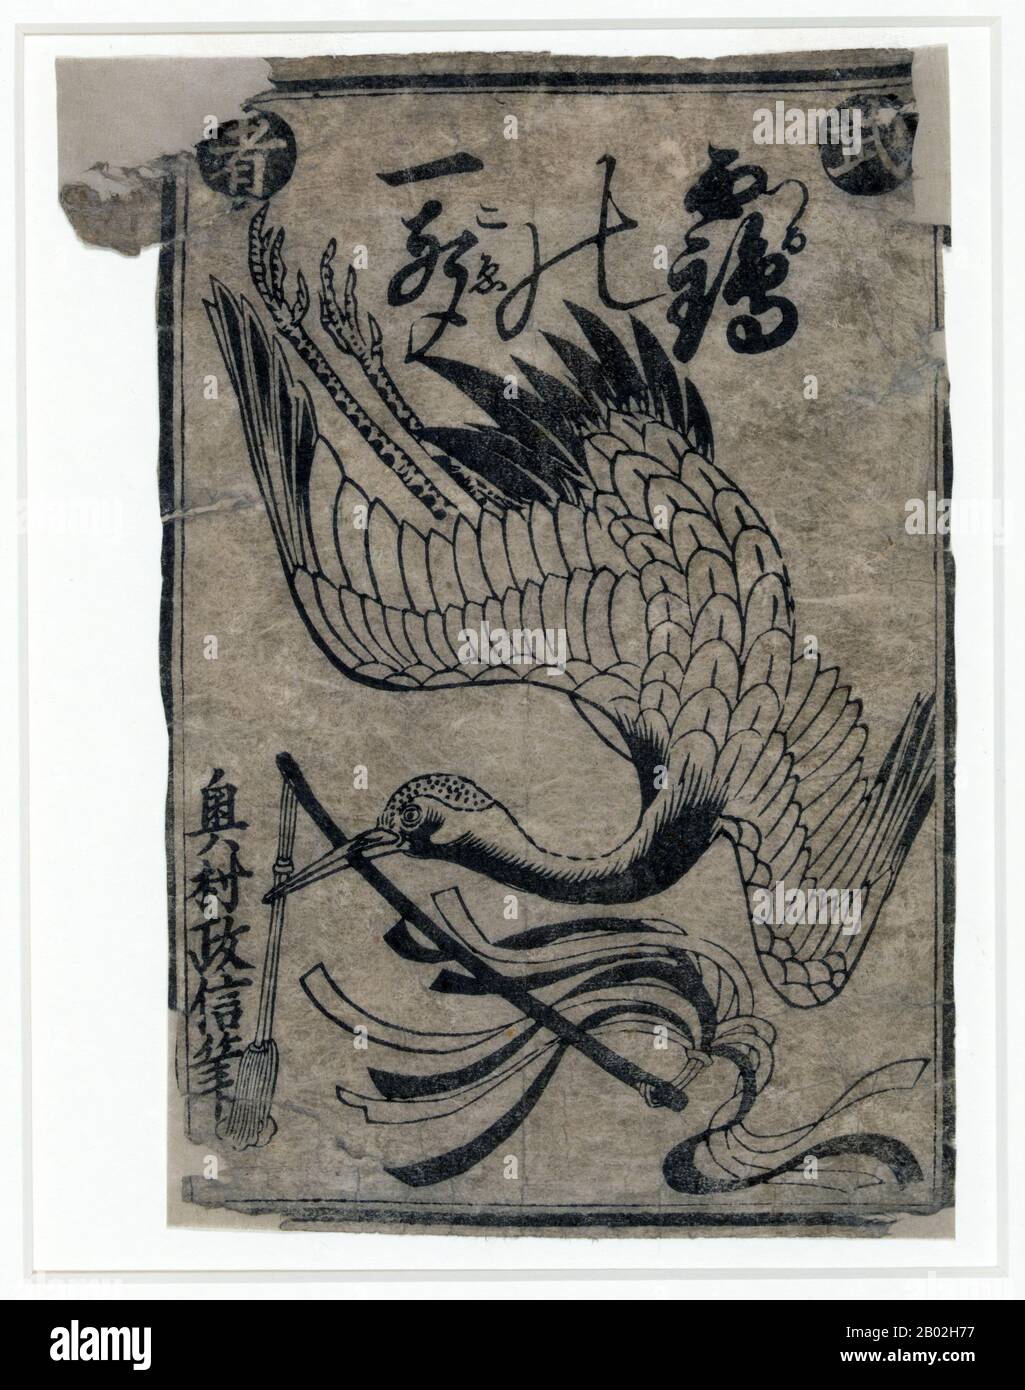 Okumura Masanobu (japanisch: 奥村 政信; 1686 - 13. März 1764) war ein japanischer Druckdesigner, Buchverleger und Maler. Er illustrierte auch Novellen und schrieb in seinen Anfangsjahren einige Belletristik. Zunächst hielt sich seine Arbeit an die Torii-Schule, driftete aber später darüber hinaus. Er ist eine Figur in der prägenden Ära des ukiyo-e, die frühe Arbeiten an Schauspielern und bijin-ga ('Bilder schöner Frauen') macht. Stockfoto